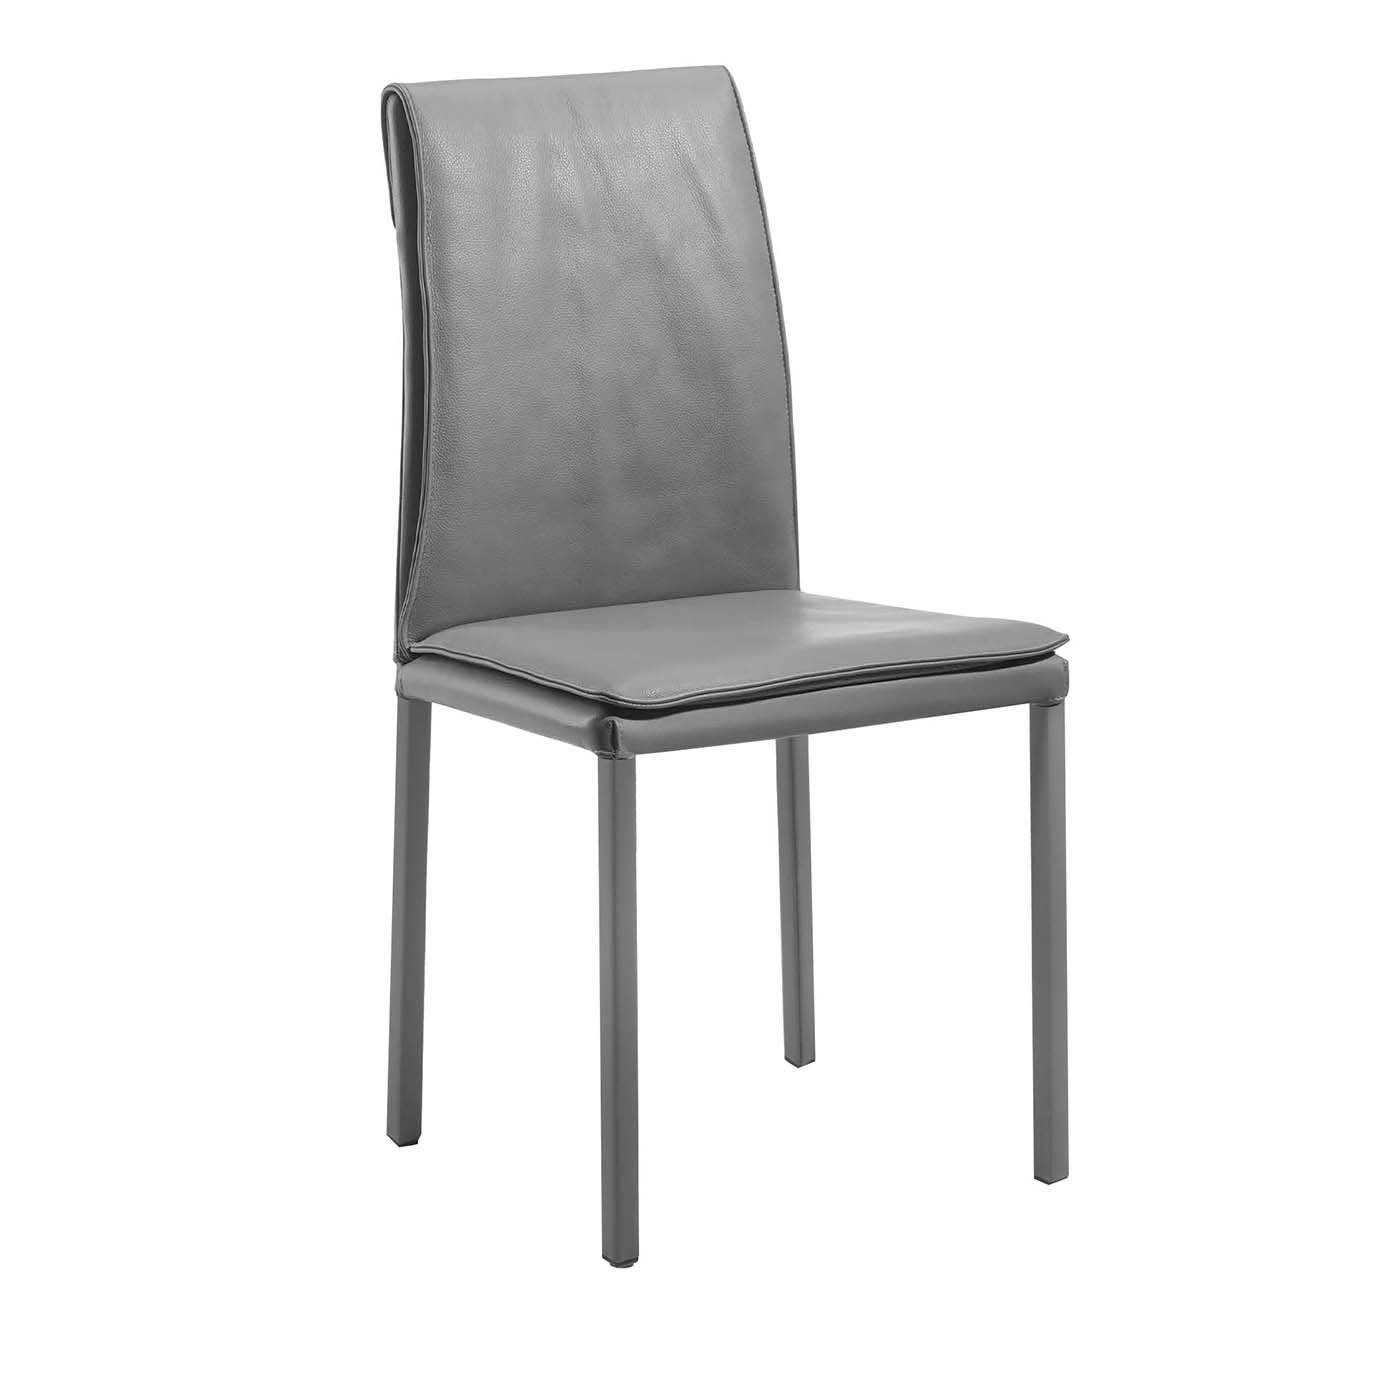 Borso Alta Light Gray Chair - Trevisan Asolo